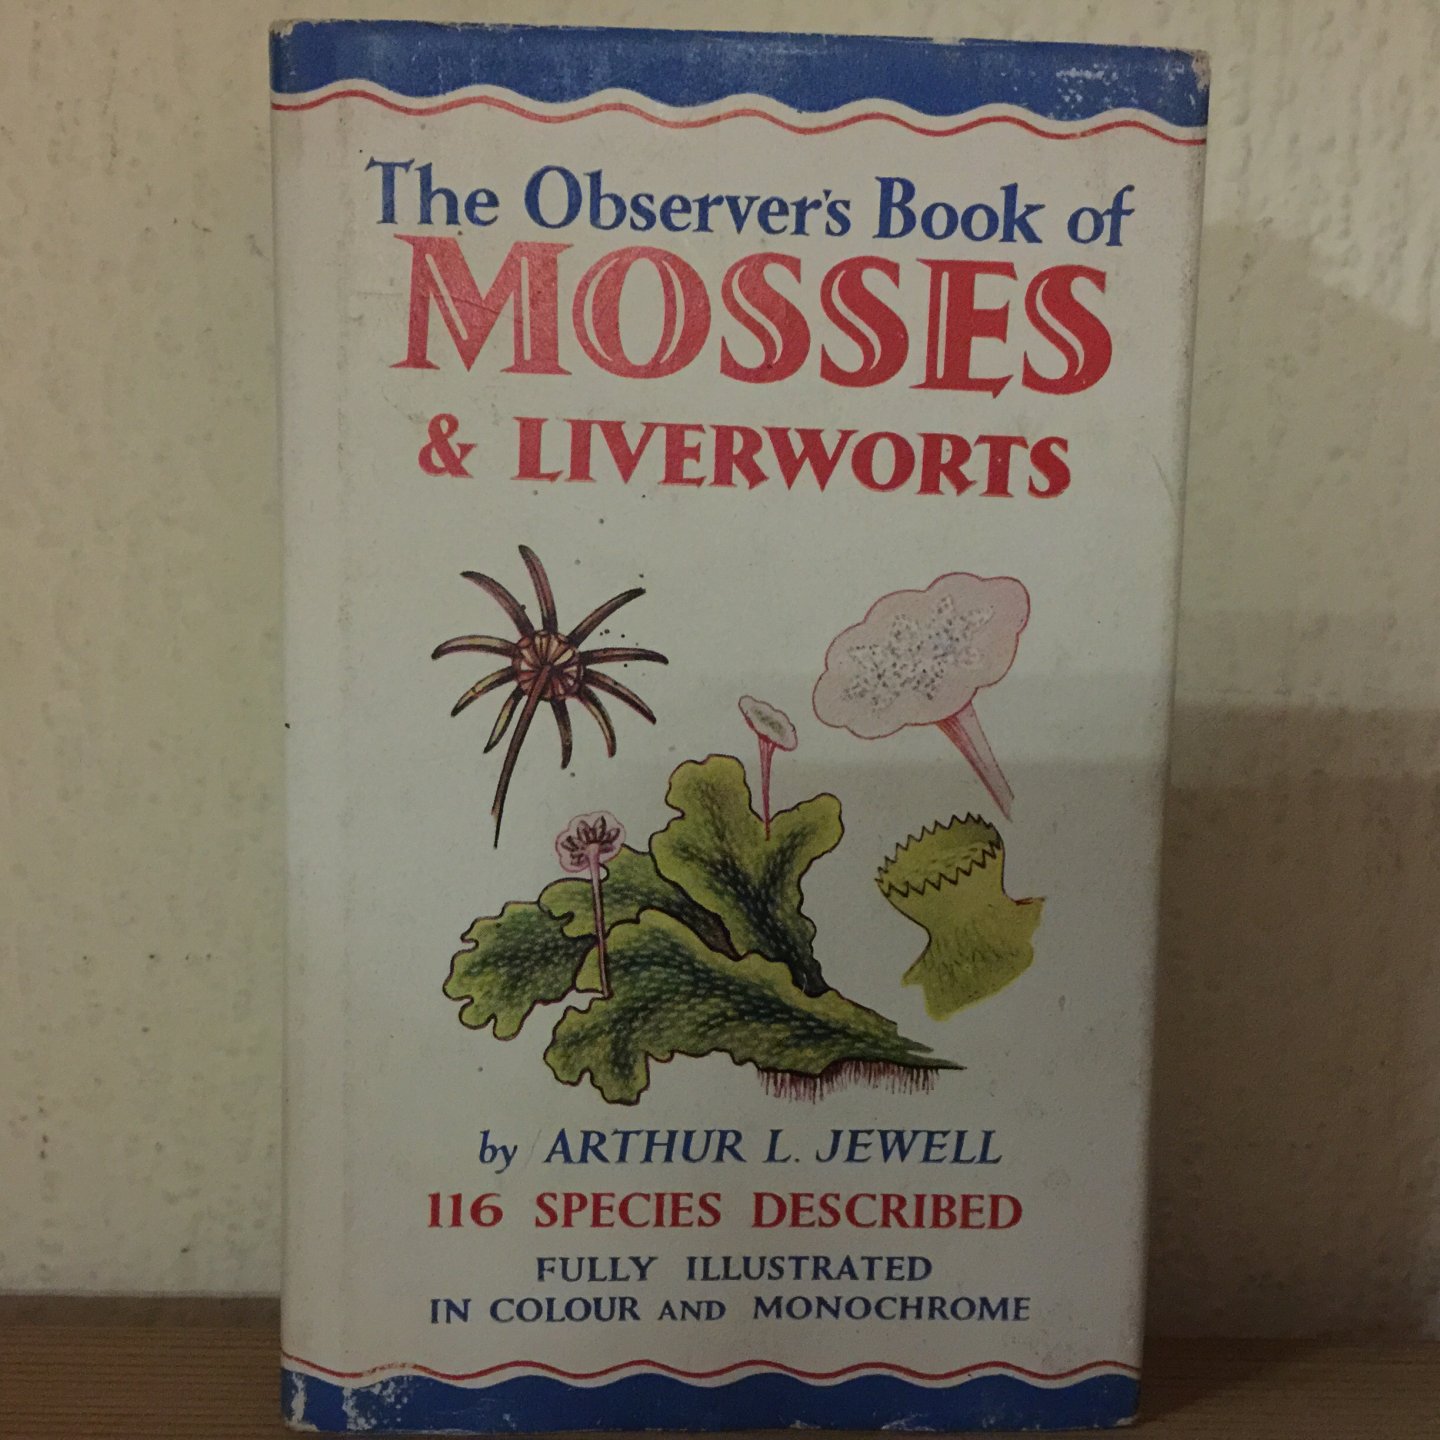 Arthur L Jewell - The Observer,s Book of MOSSES & Livetworts 116 Spcies Described